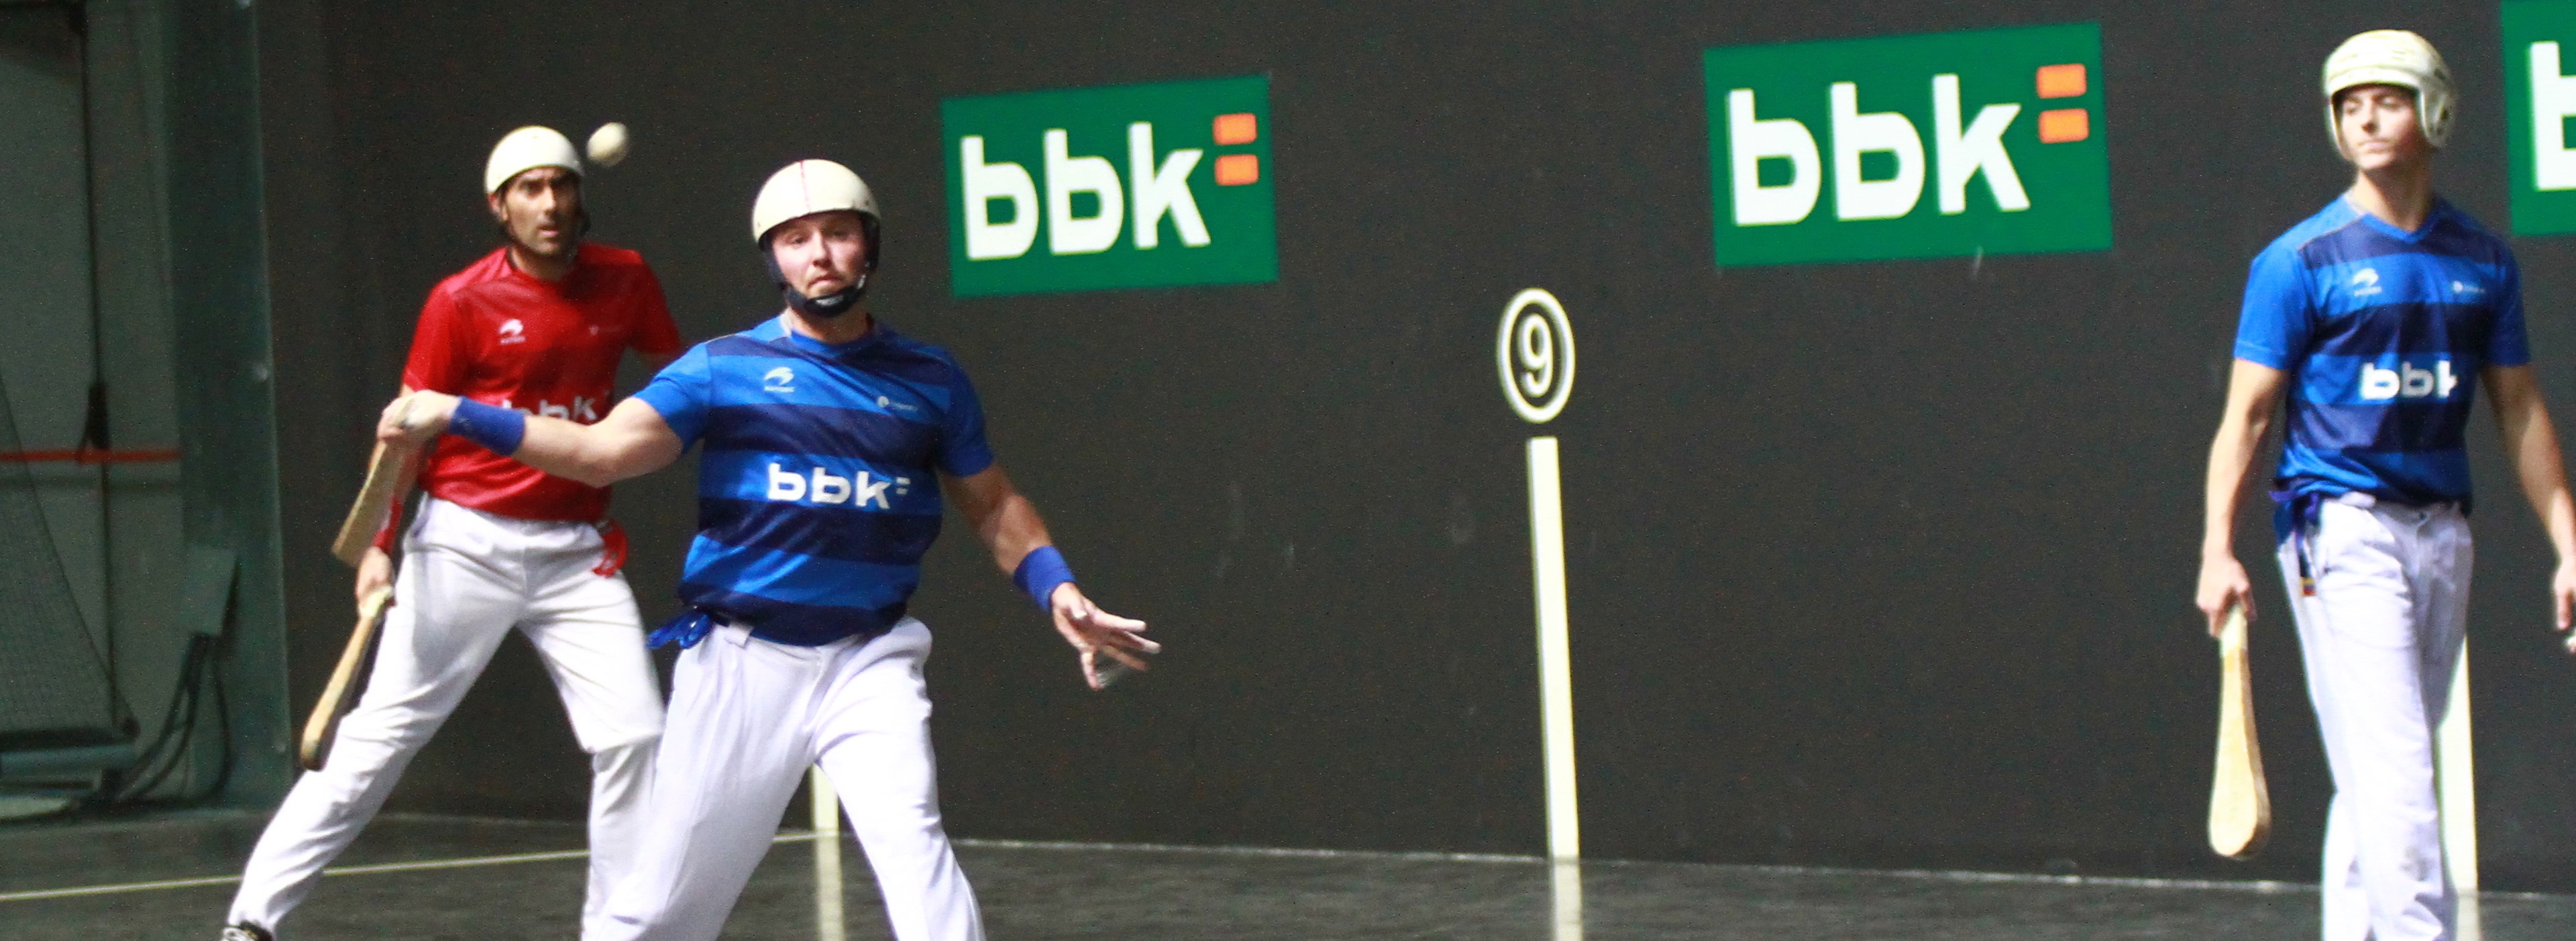 Zubiri-Brefel comienzan su andadura en la liga bbk 2015…